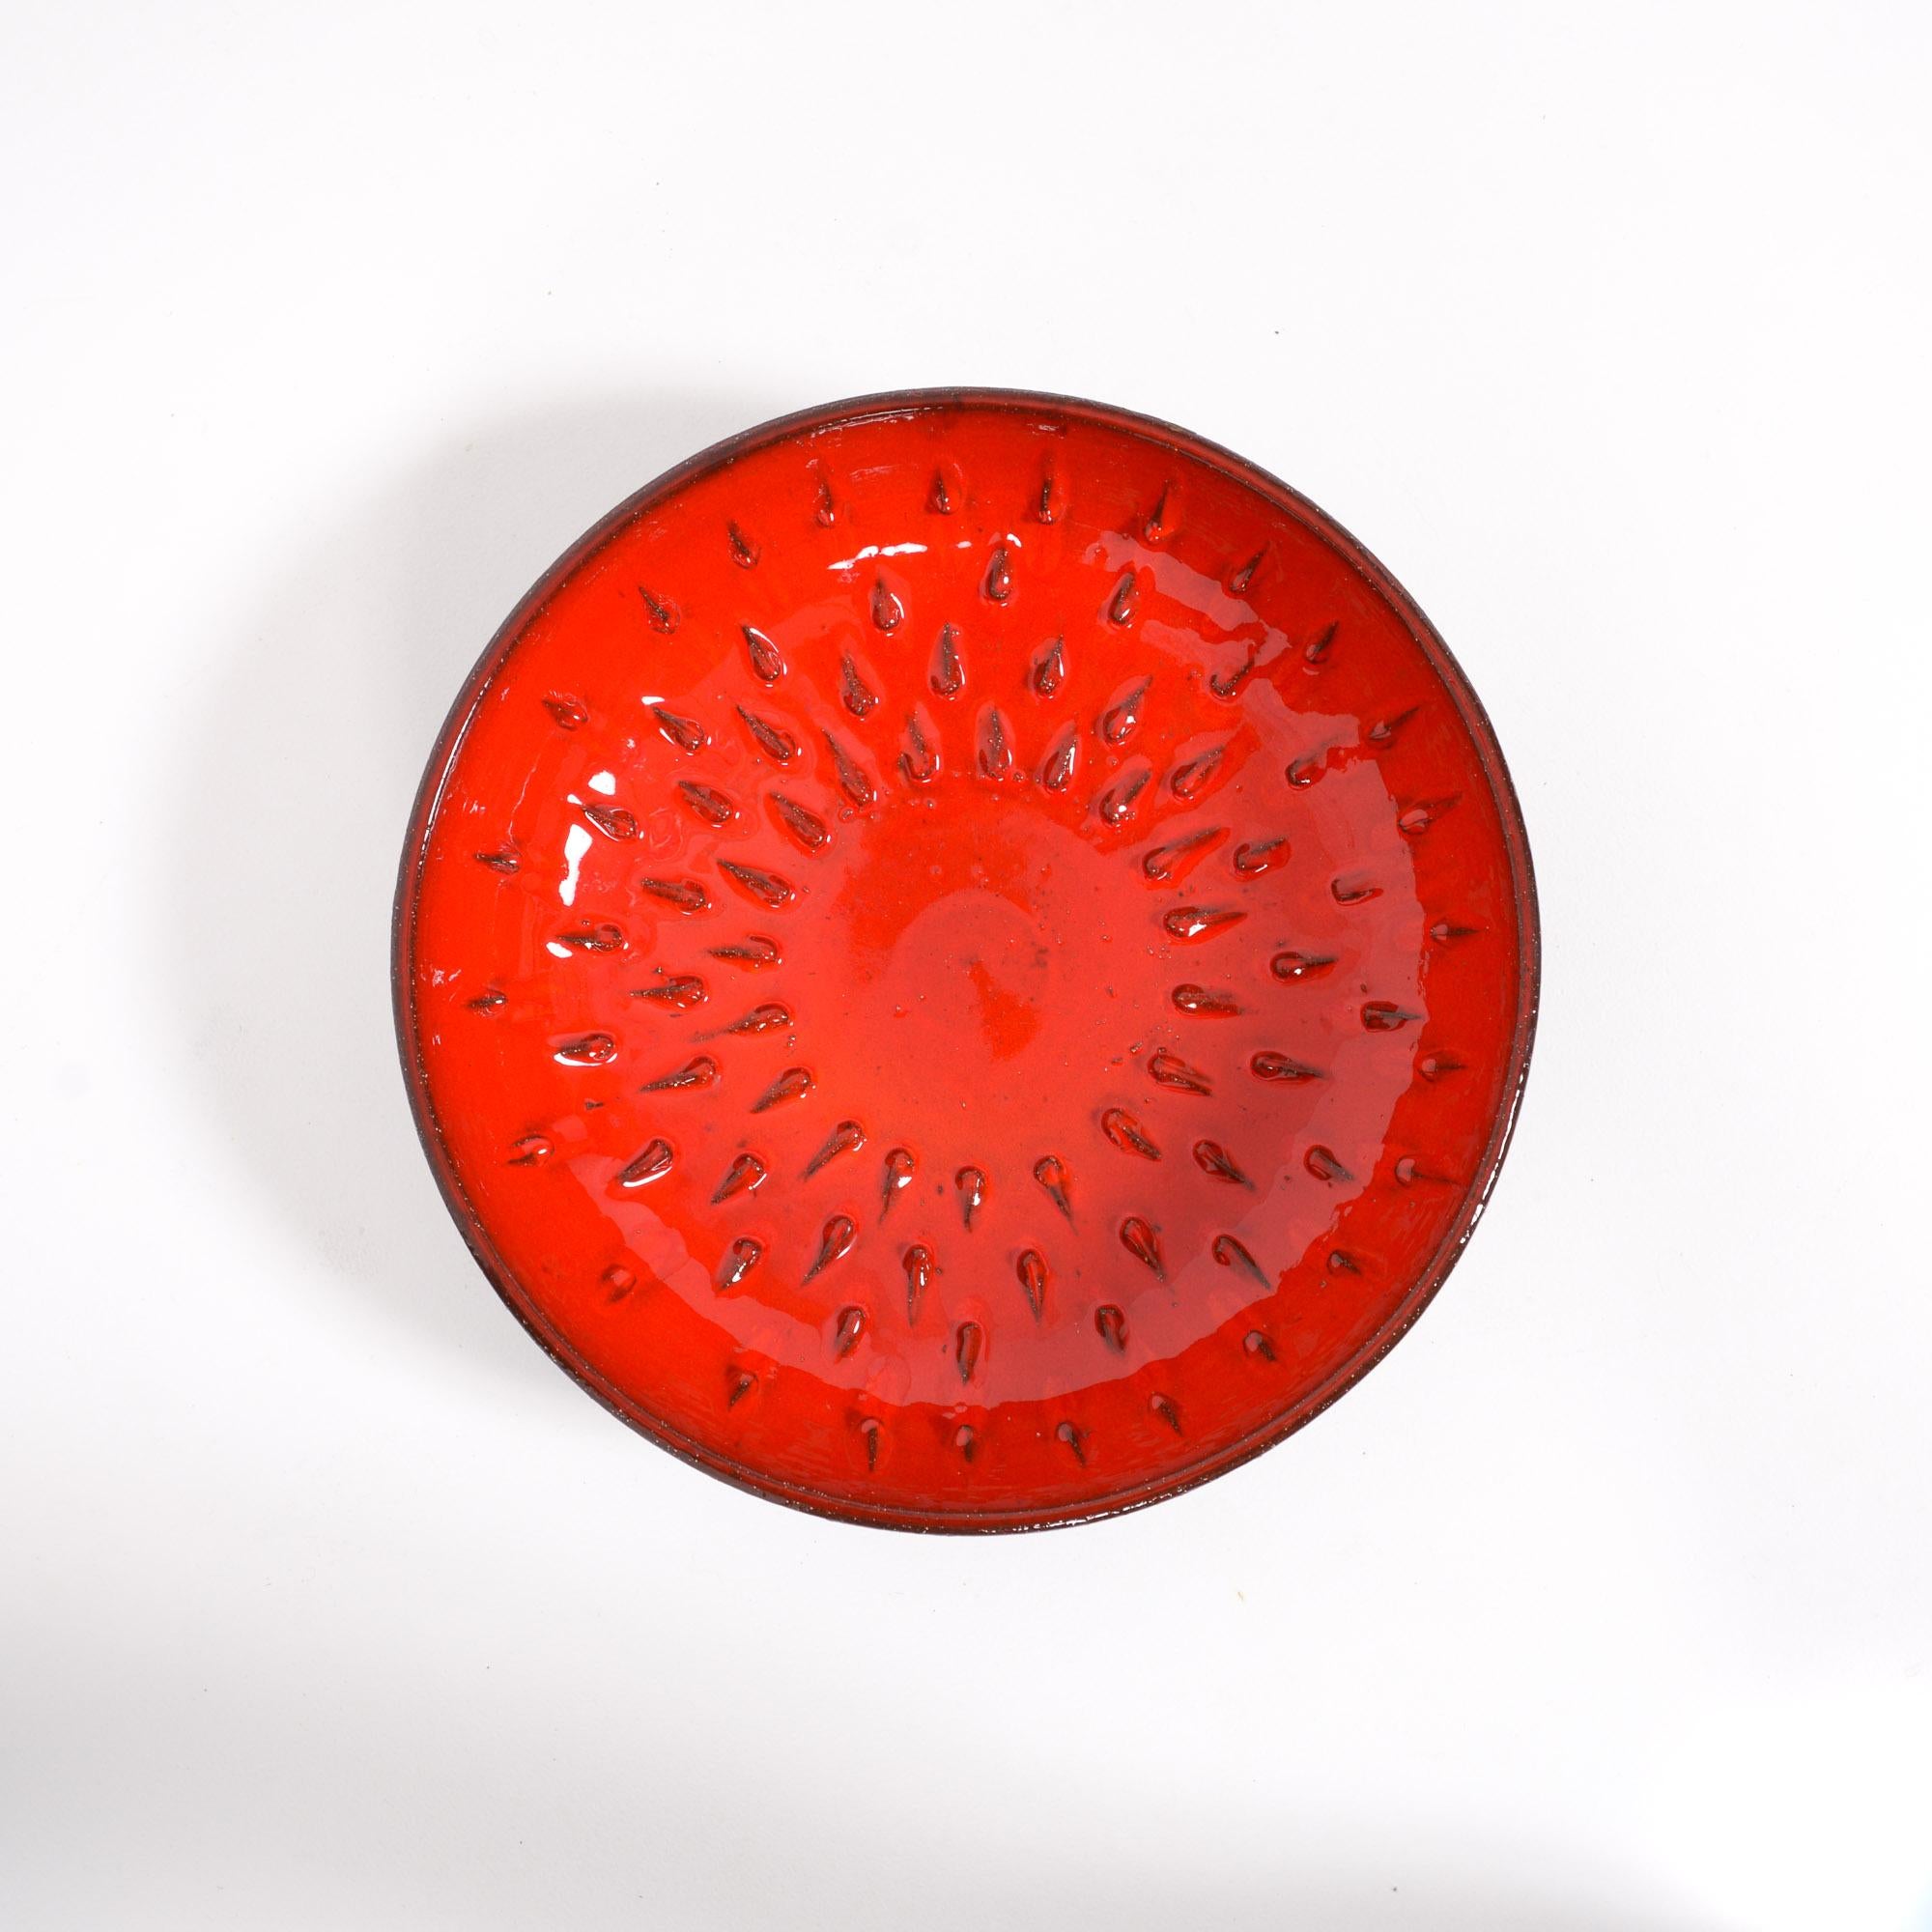 Red Amphora Bowl by Rogier Vandeweghe 1